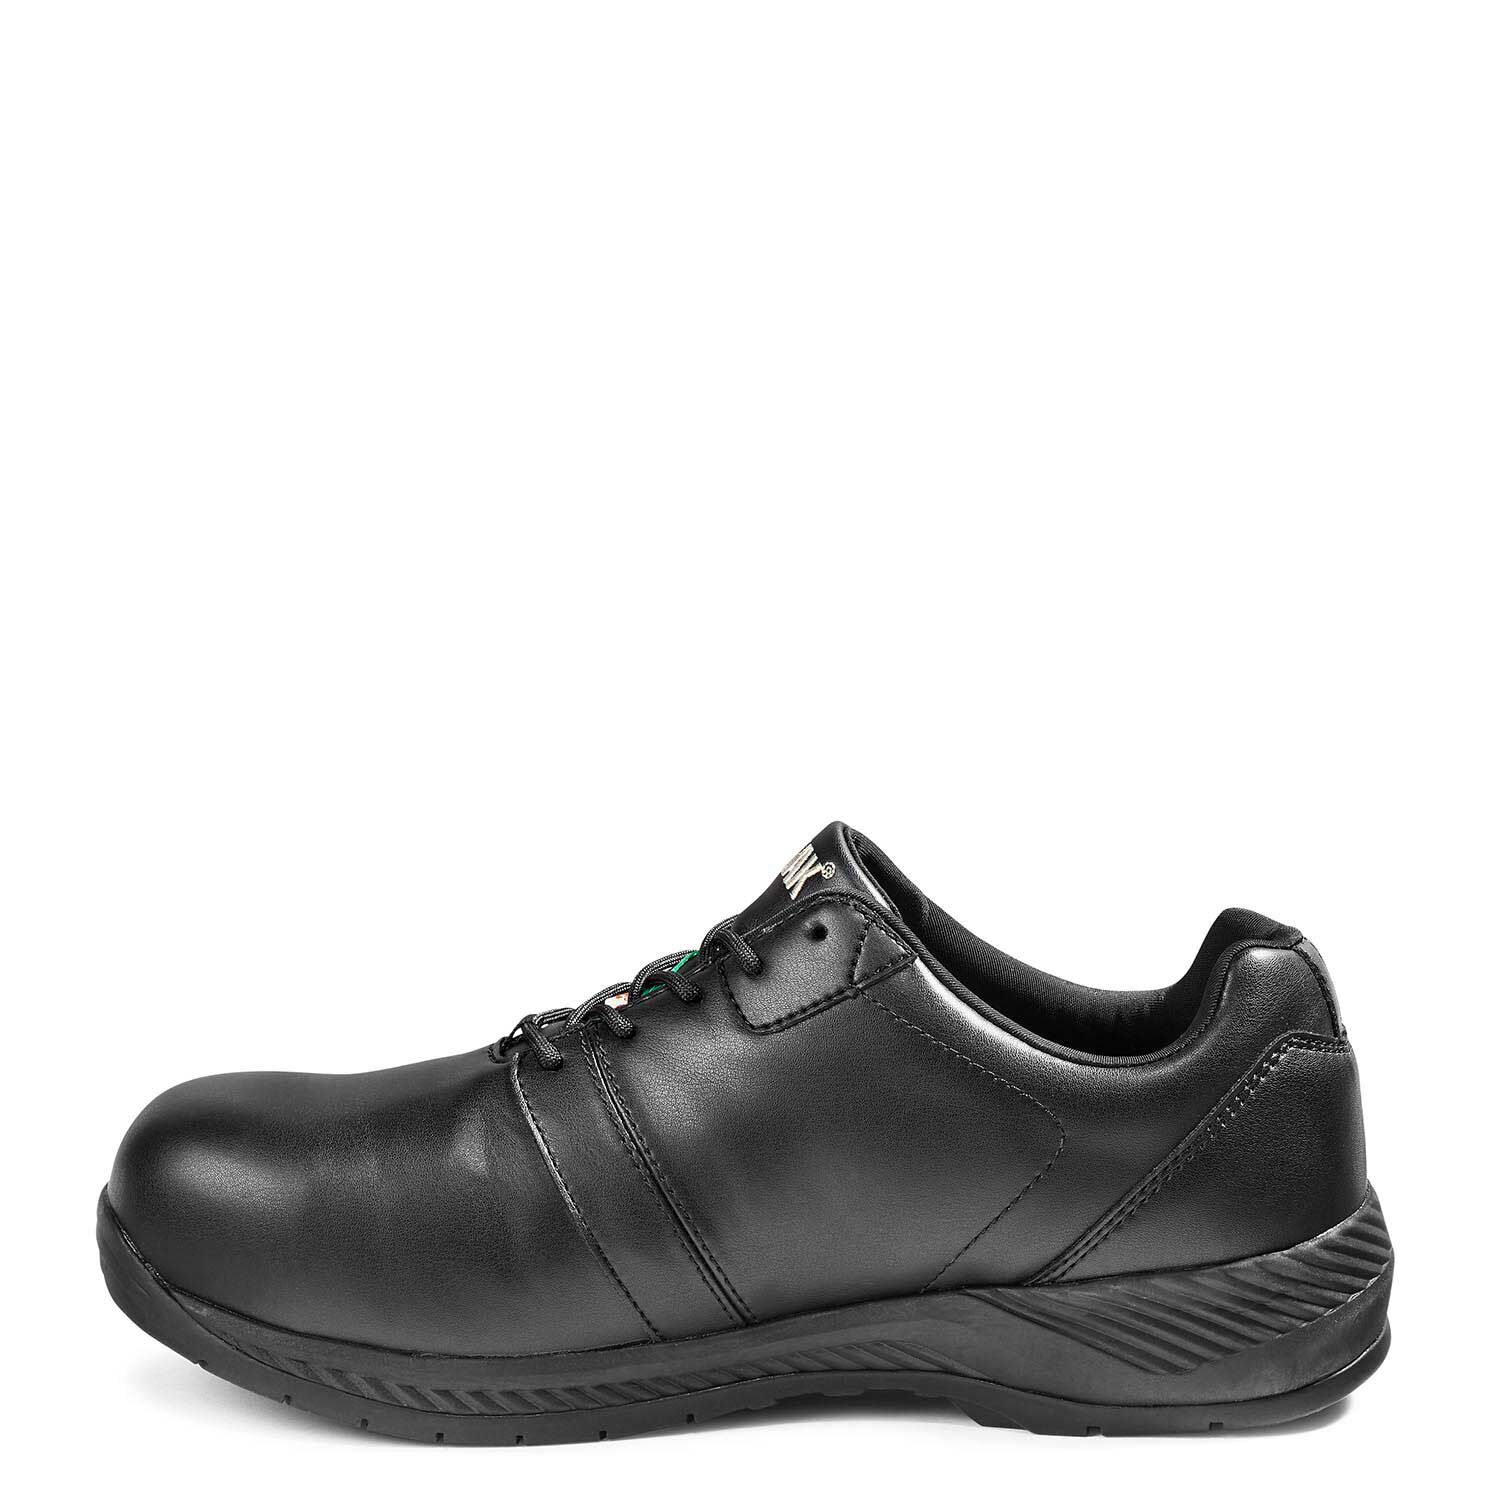 Men's Kodiak Flex Borden Aluminum Toe Casual Safety Work Shoe